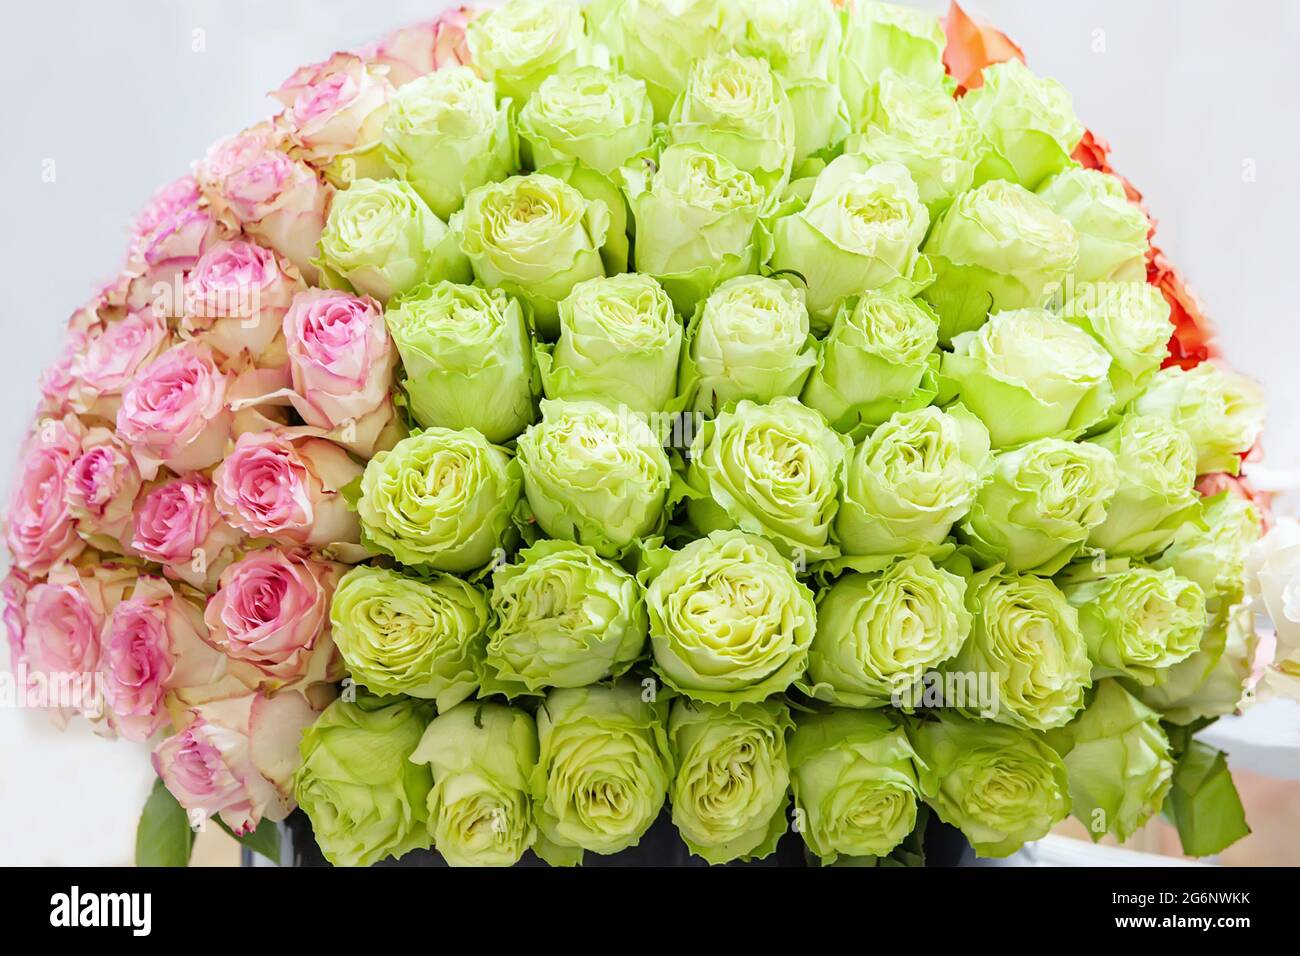 Riesiges Bouquet von schönen großen grünen und rosa Rosenblüten.  Natürlicher Hintergrund von romantischen Blumen. Zwei Farben von Rosen in  einem Bouquet Stockfotografie - Alamy